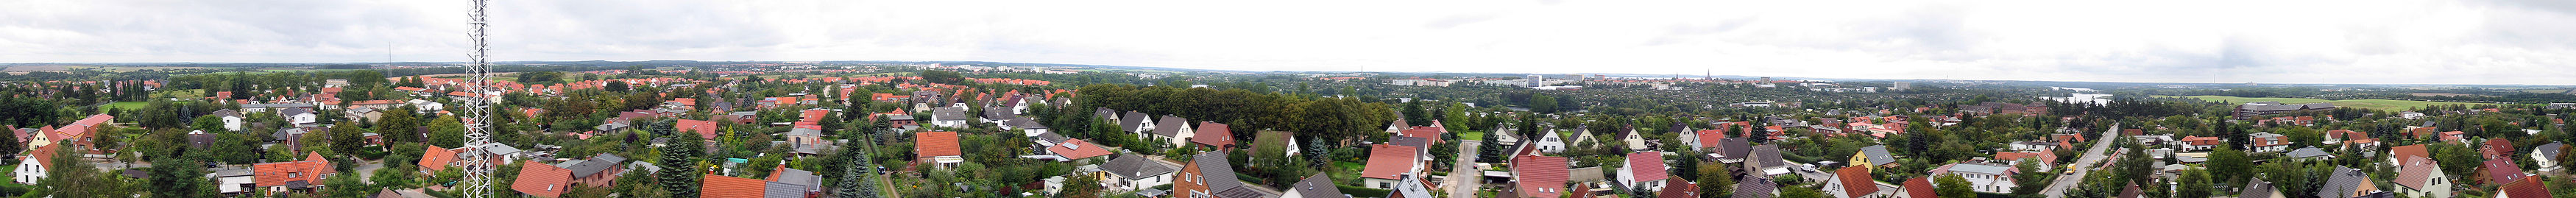 360° Panoramabild Schwerins, gesehen vom Wasserturm im Stadtteil Neumühle